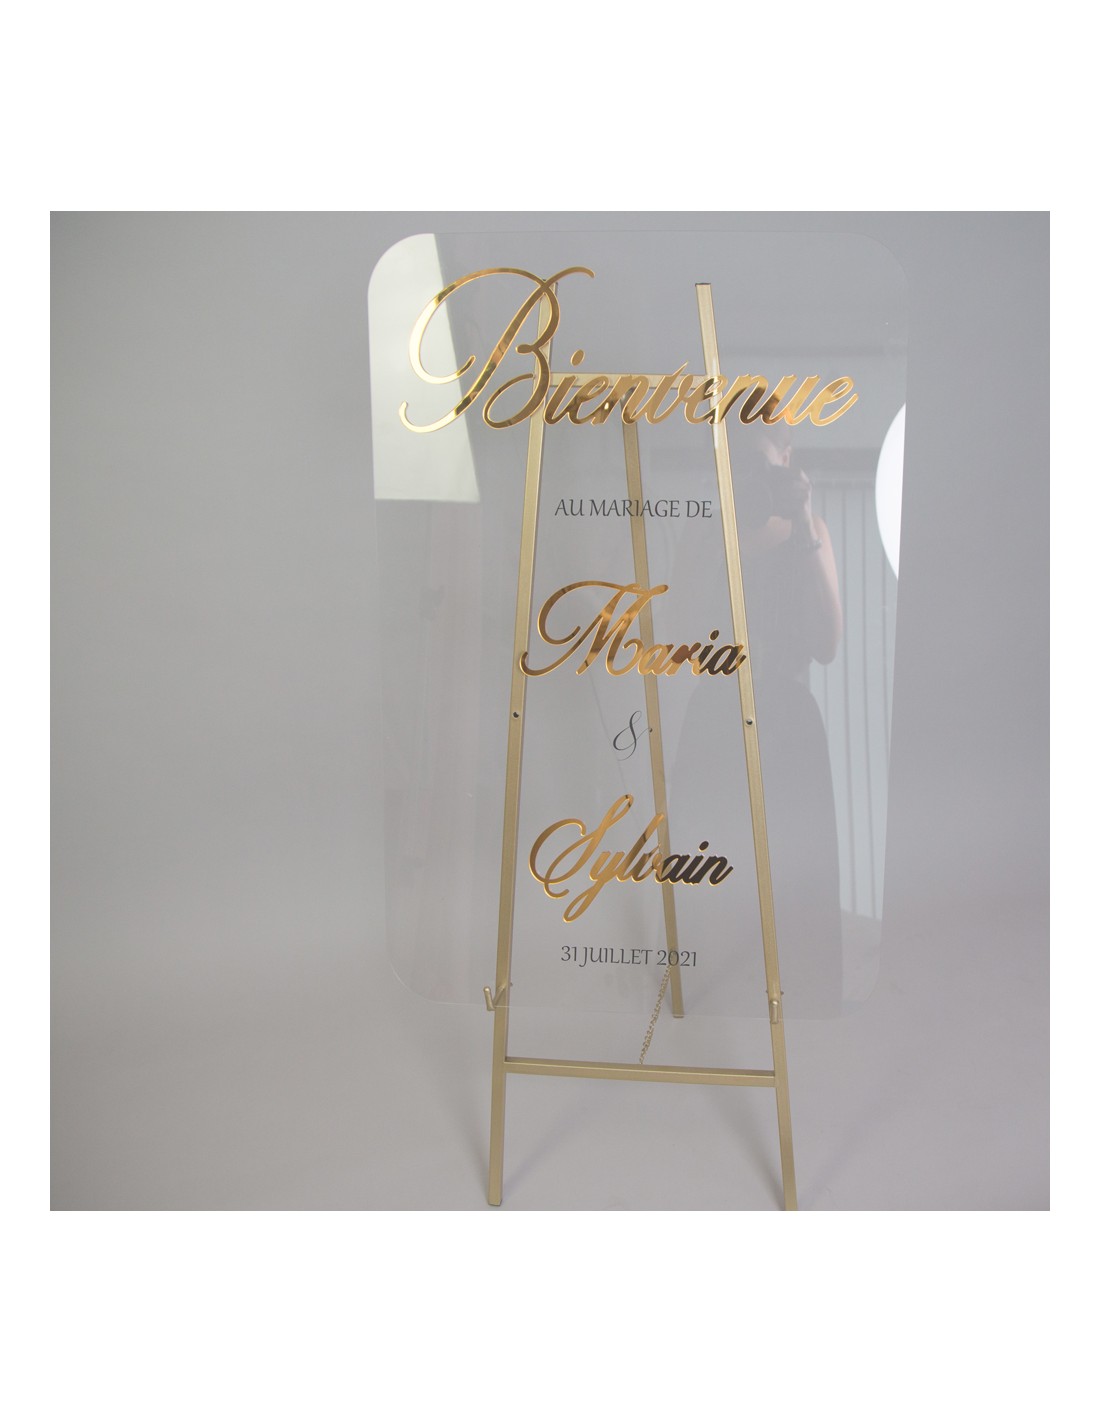 Tableau de Bienvenue Mariage Plexiglas avec mots en relief couleur or